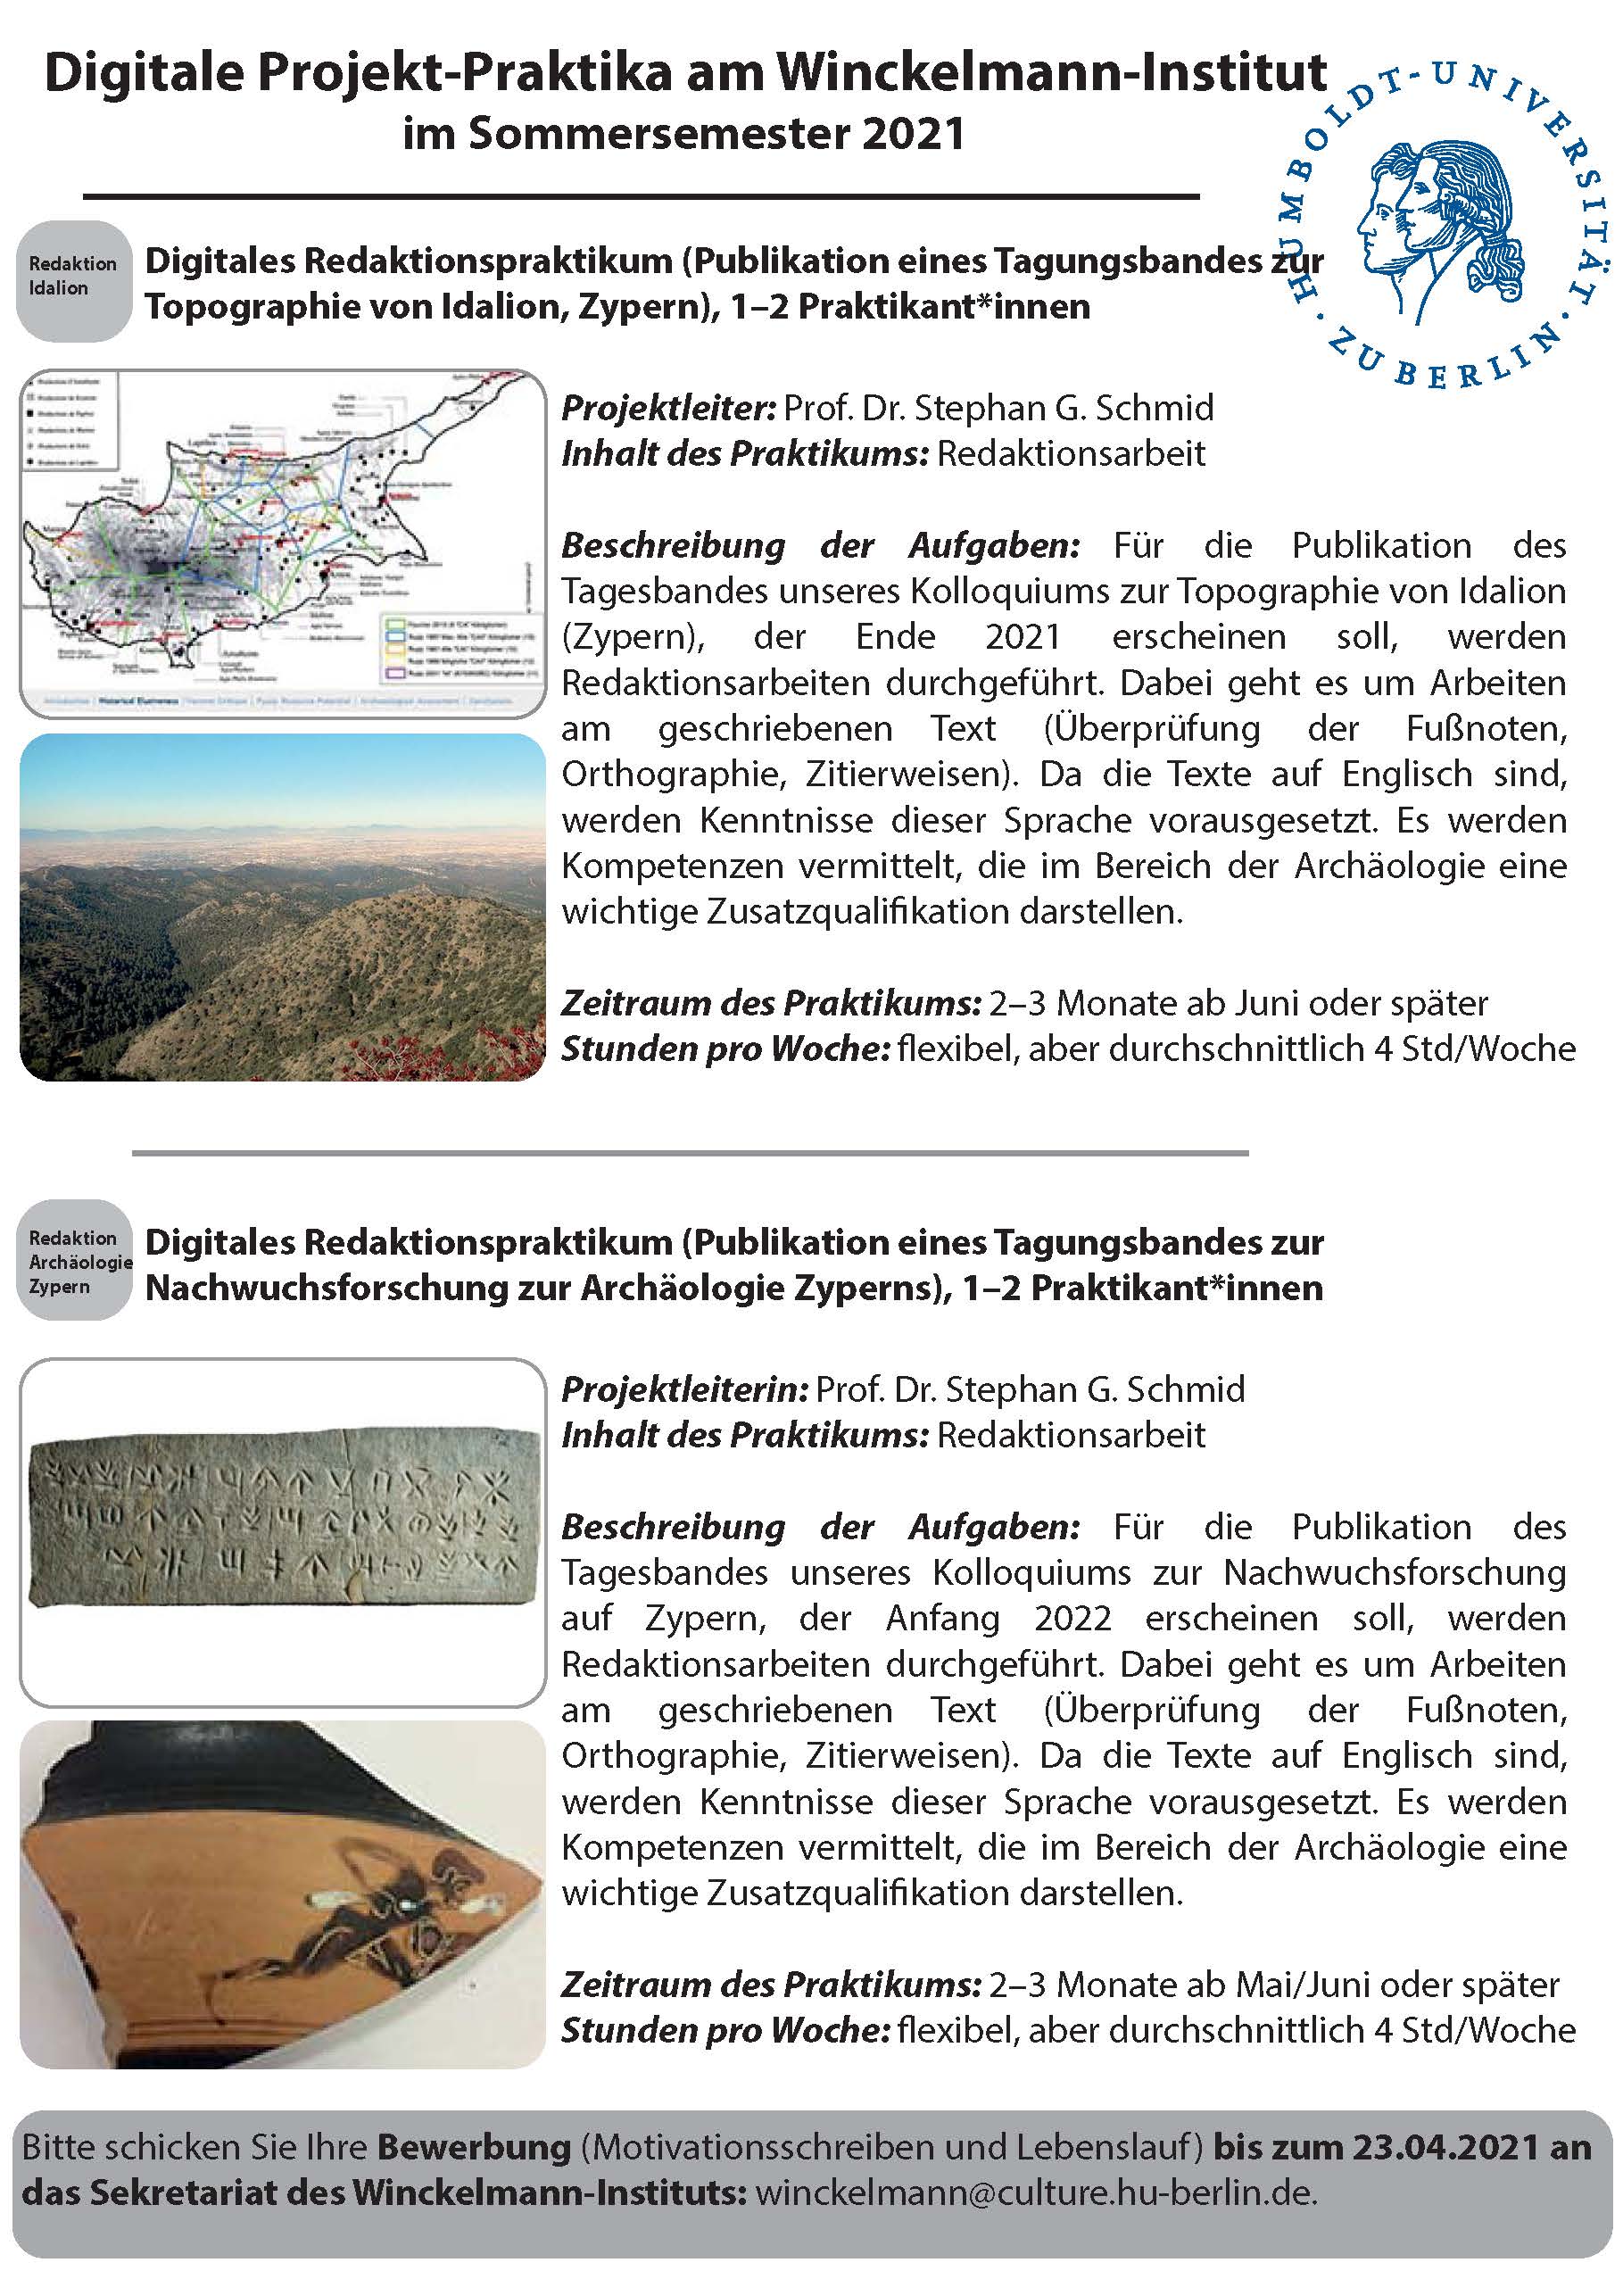 Ausschreibung_Digitale Projekt-Praktika_Winckelmann-Institut_SoSe2021_Seite_6.jpg